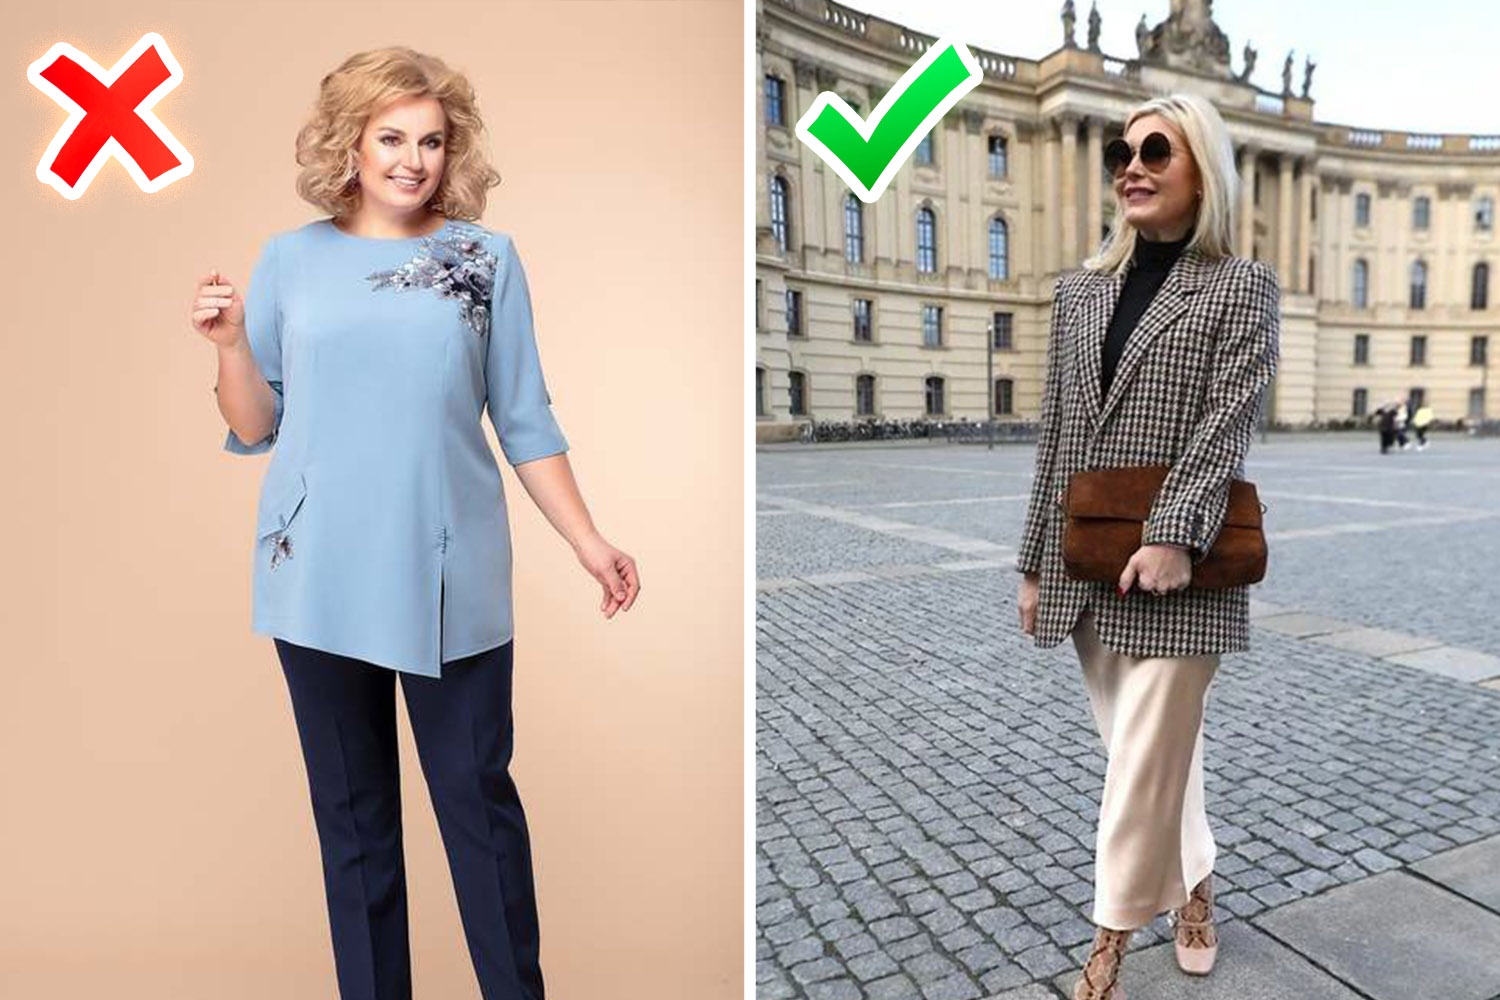 10 yıl önce satın alınanları giyme alışkanlığı cesurca 10 yıl üst üste atıyor - soldaki fotoğrafta olduğu gibi uygulama ile birlikte bluzun kesiminin modası çoktan geçti